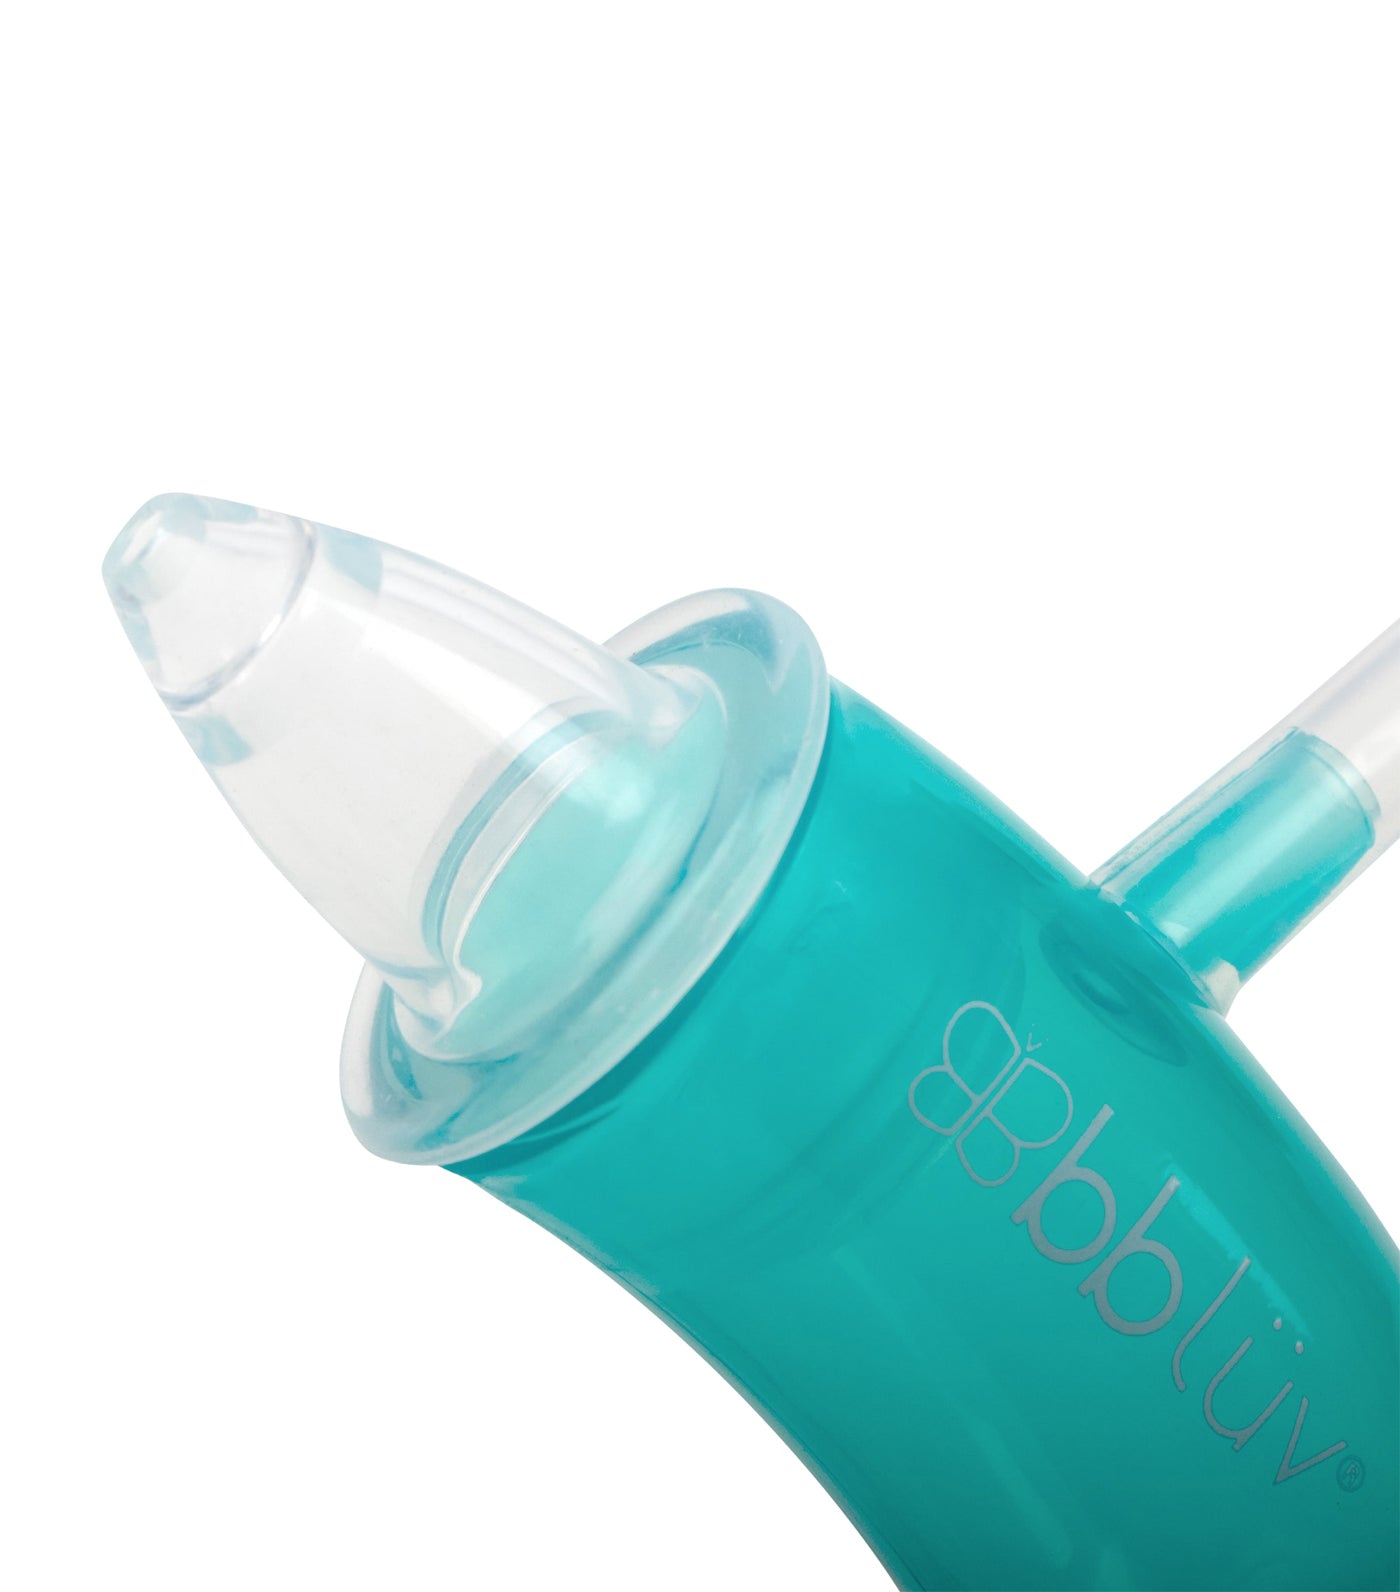 Nöze: Filter-Free Nasal Aspirator